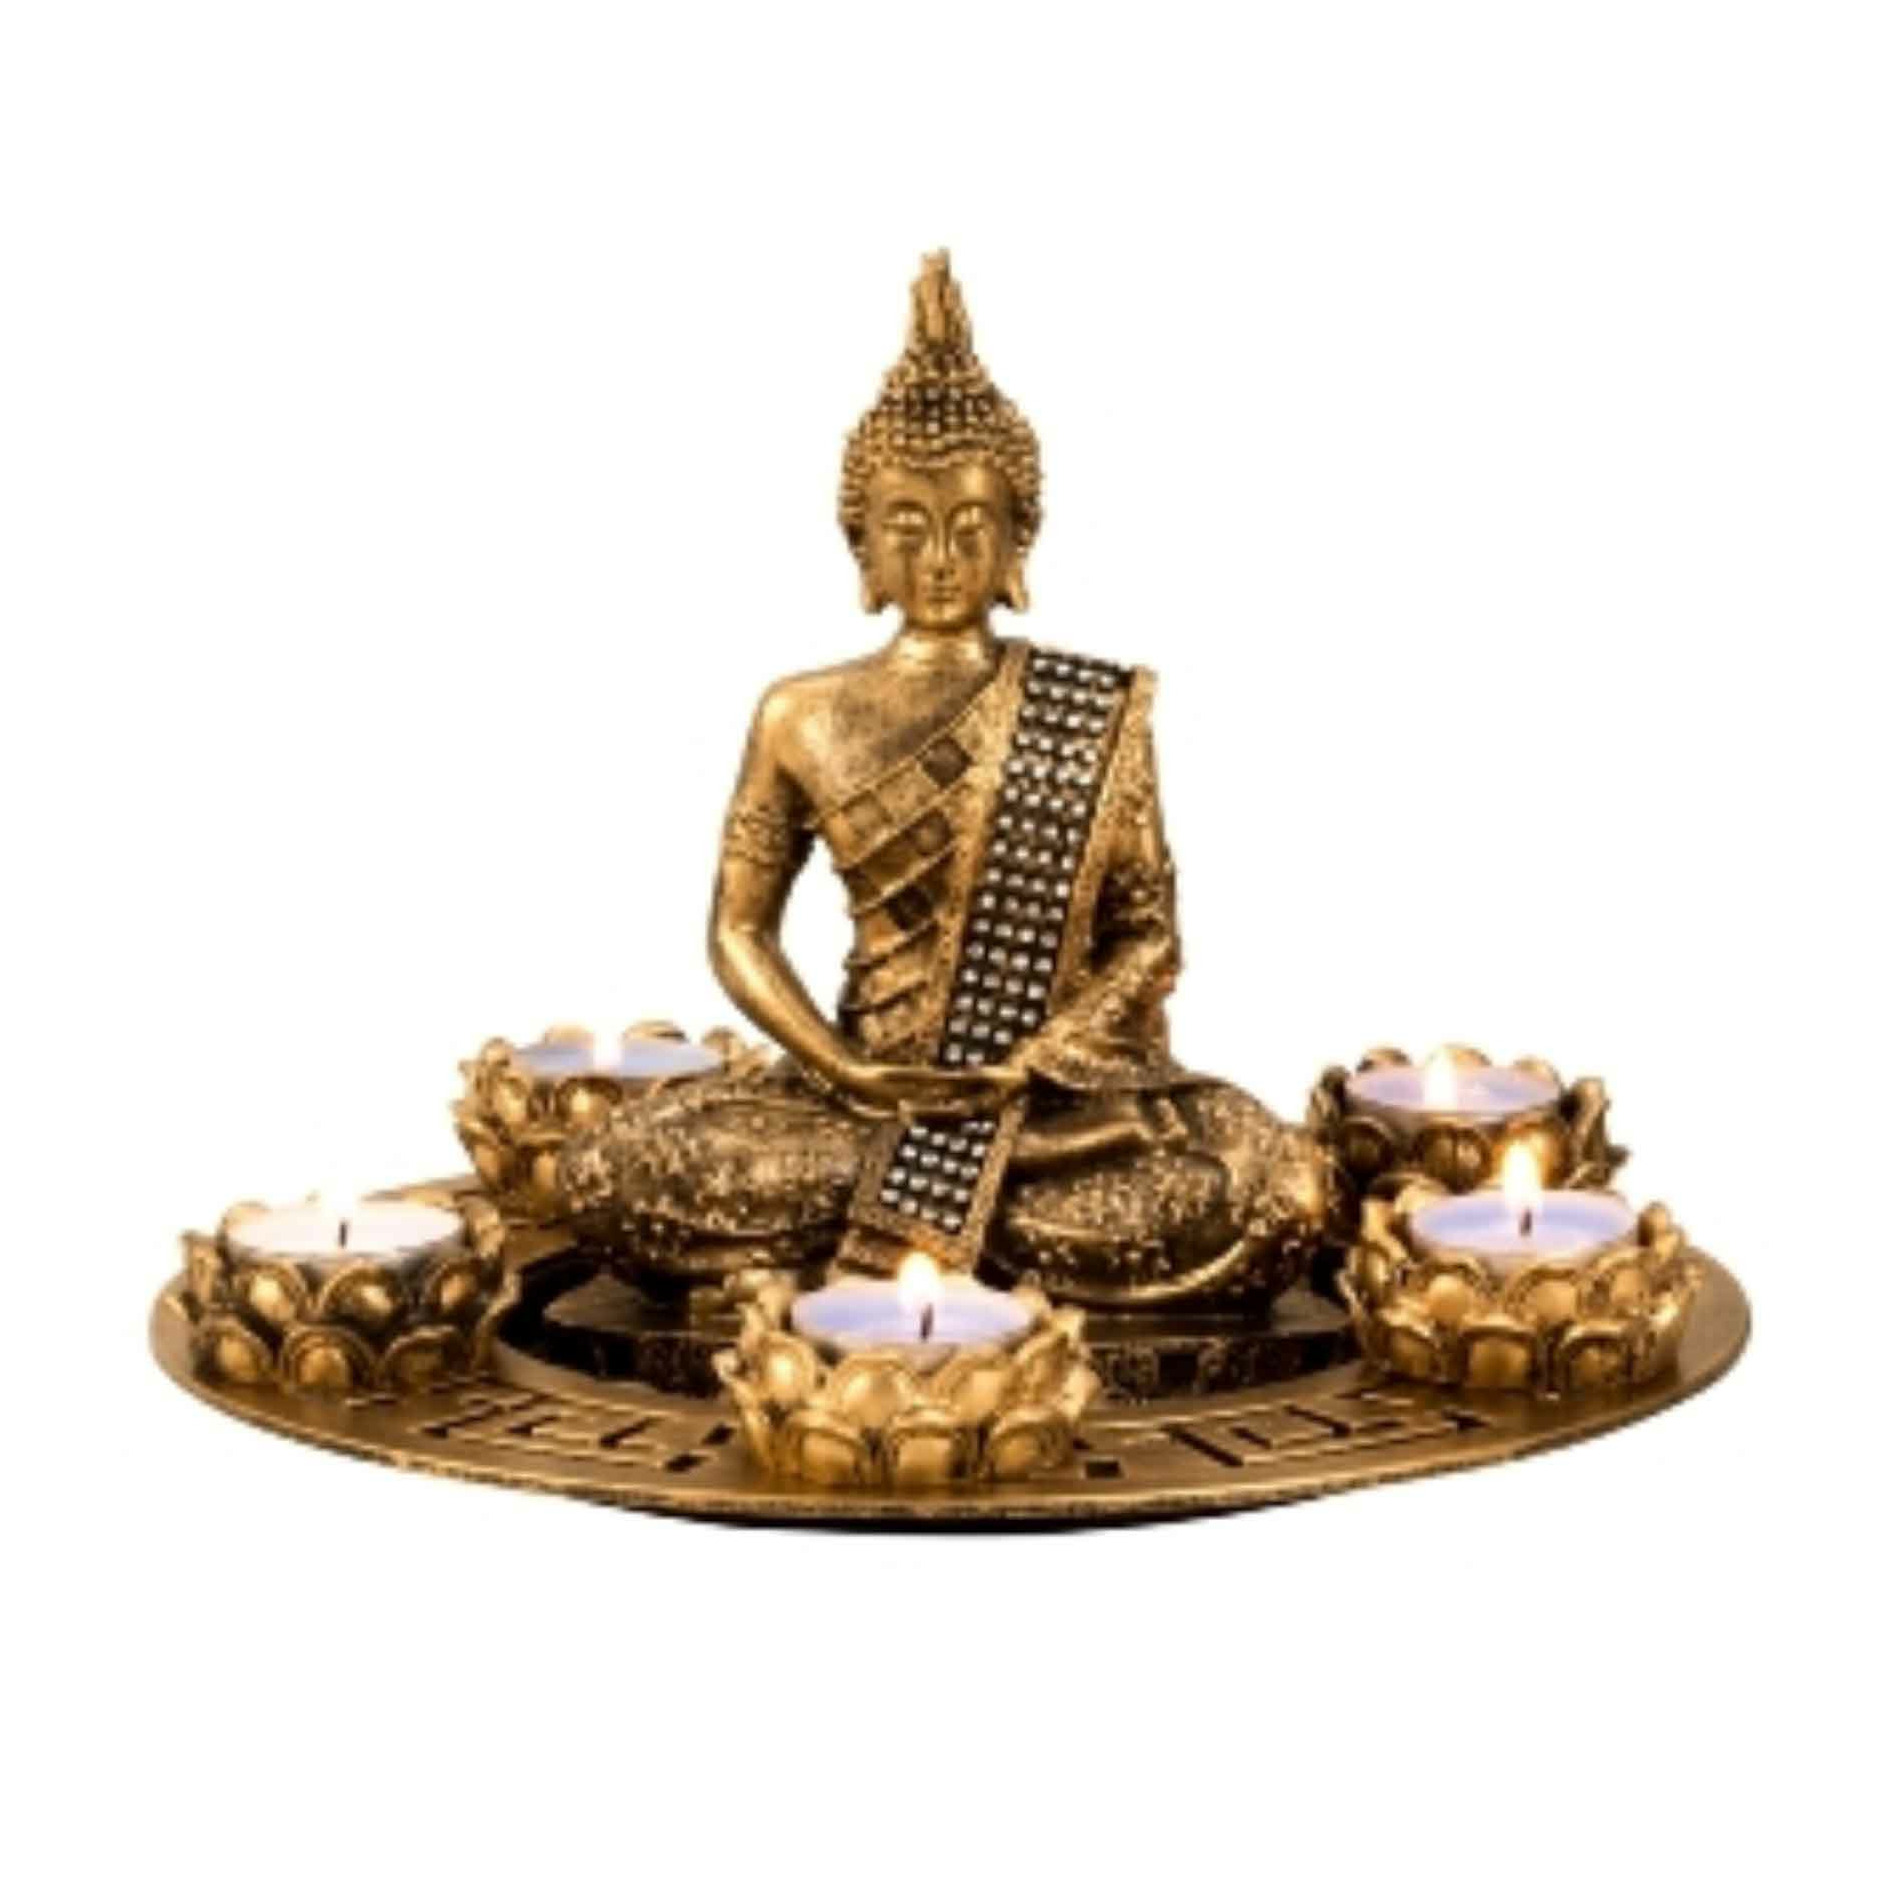 Boeddha beeldje met 5 kaarshouders op schaal - kunststeen - goud - 27 x 20 cm - deco artikel -